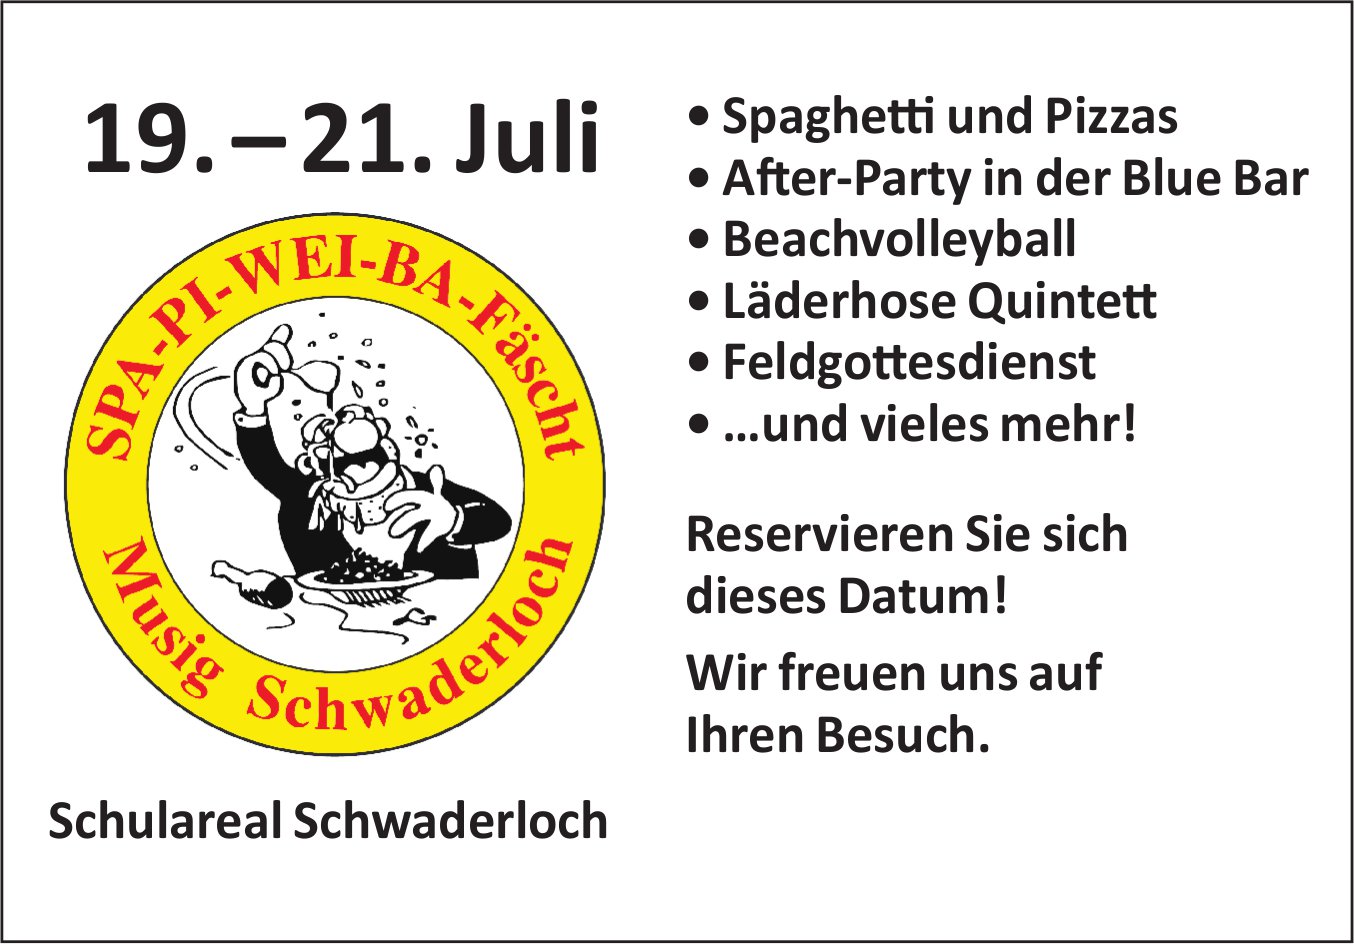 SPA-PI-WEI-BA-Fäscht, 19. bis 21. Juli, Schulareal, Schwaderloch